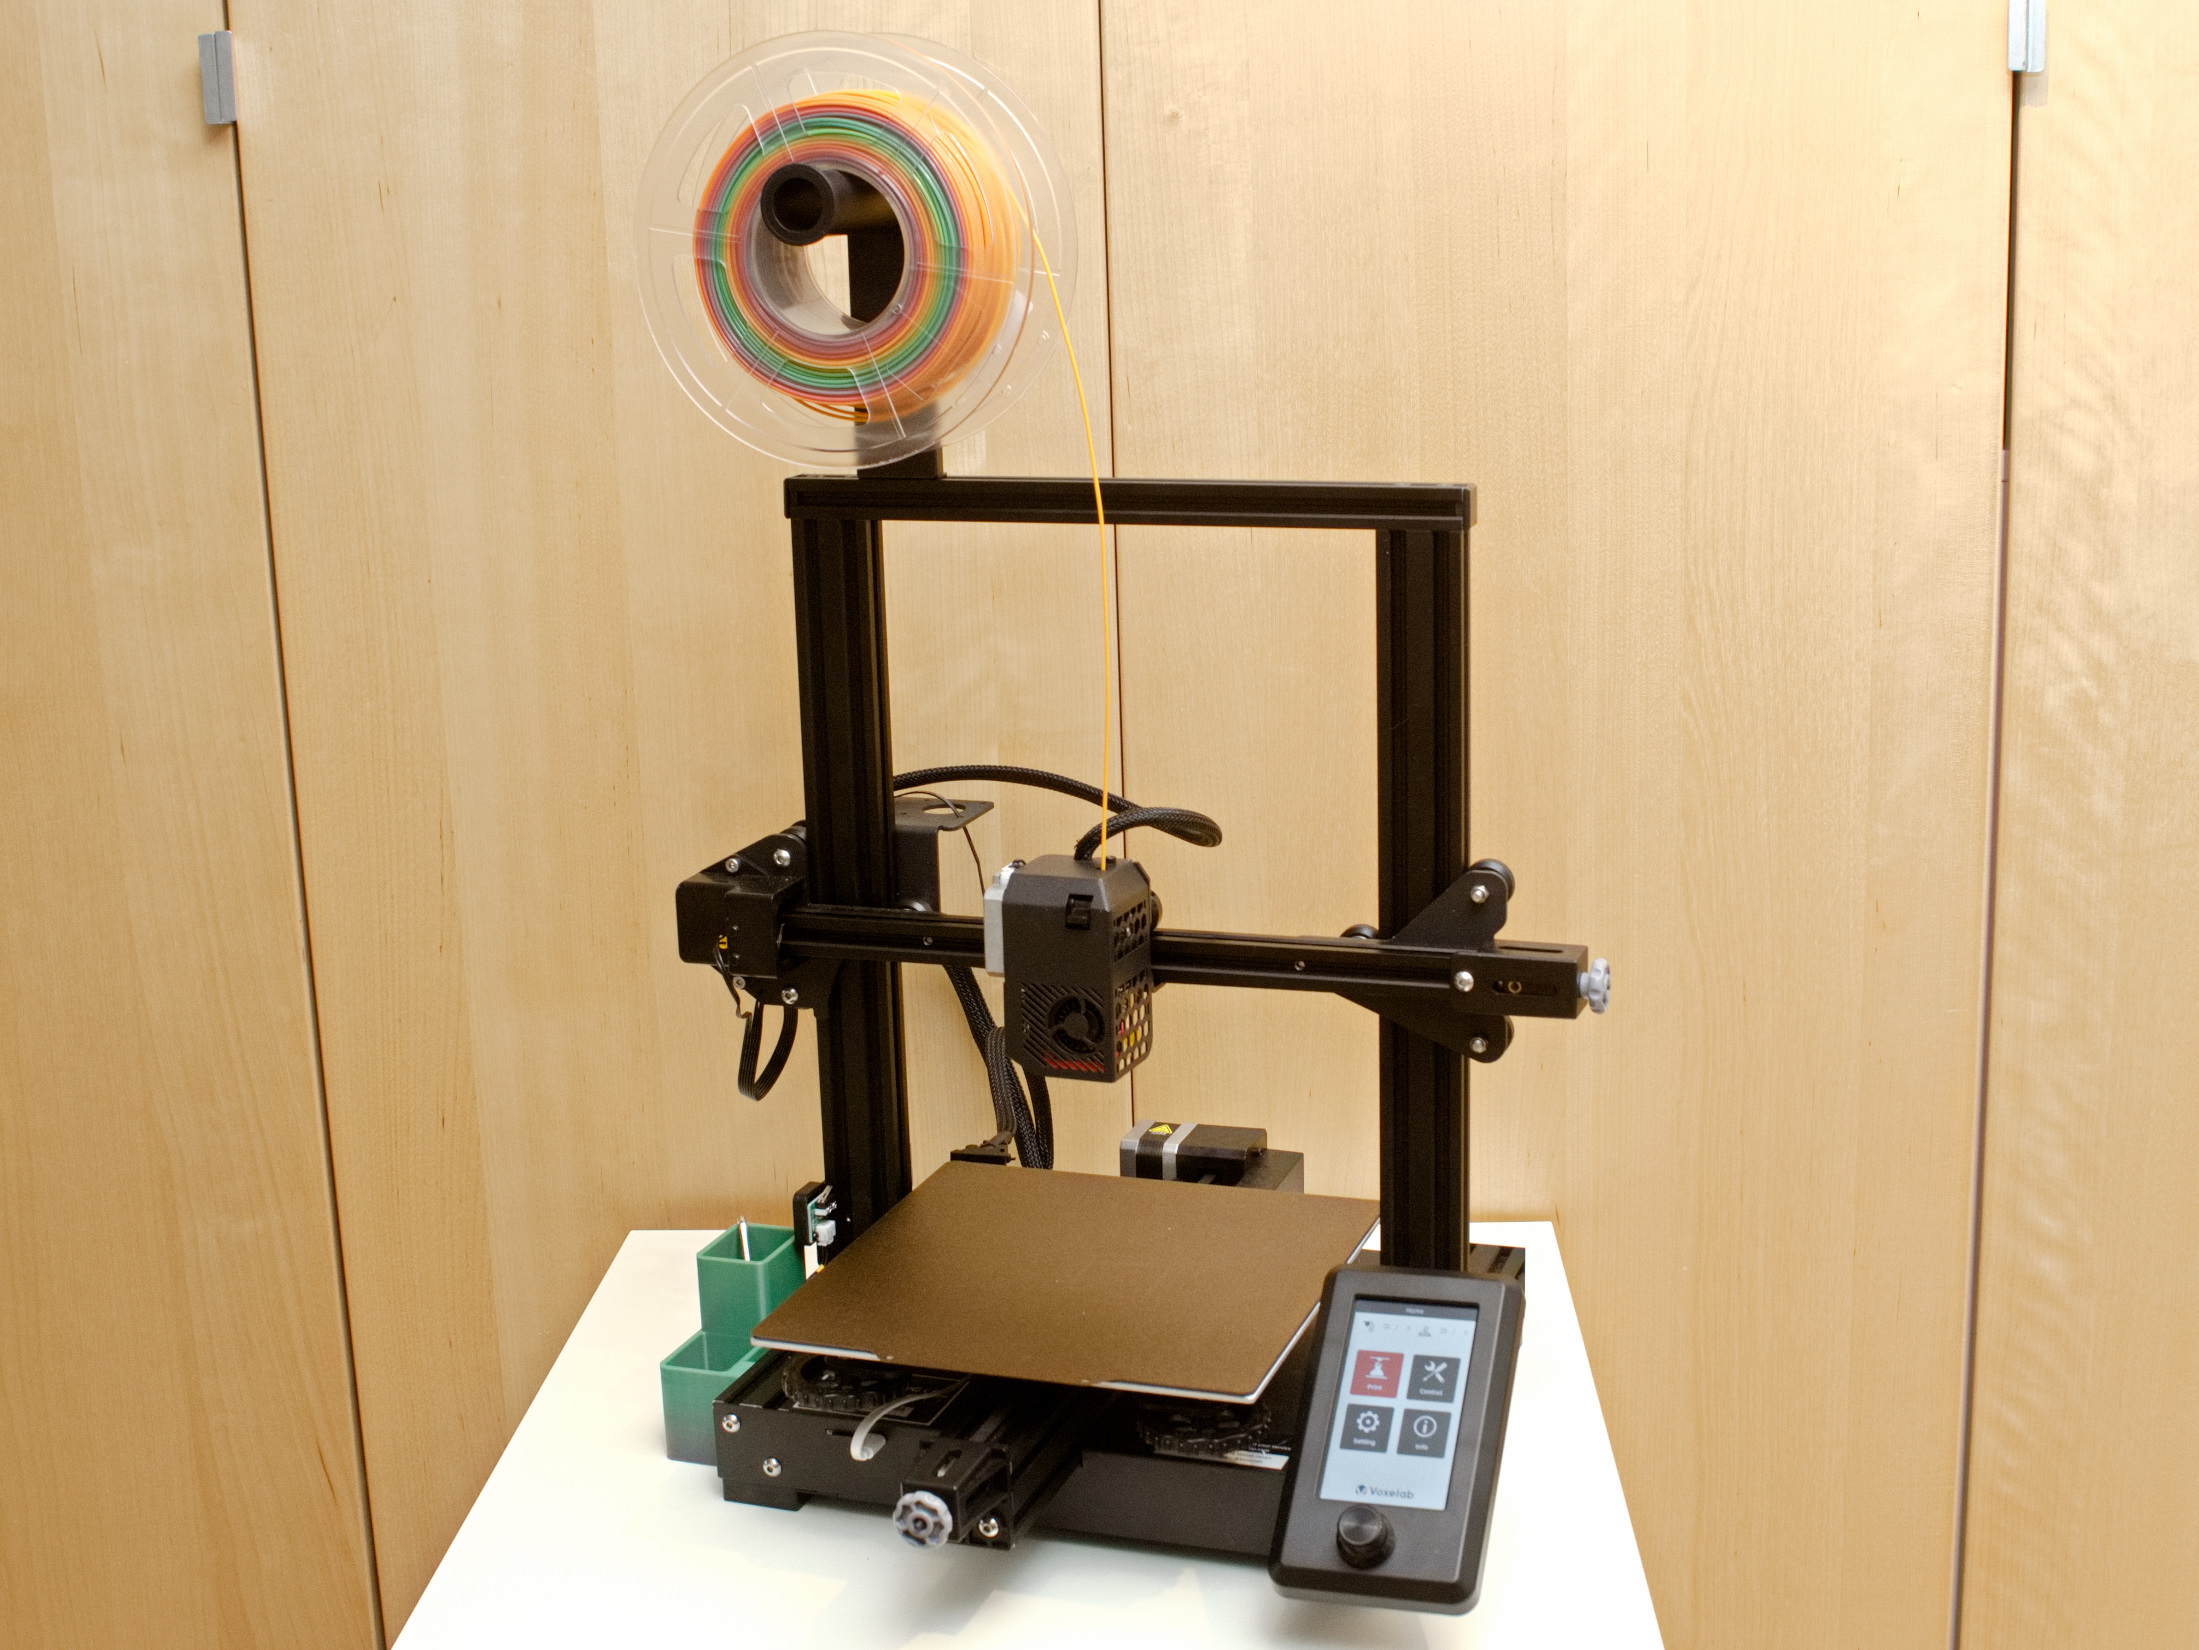 VoxeLab Aquila S2 3D printer evaluate